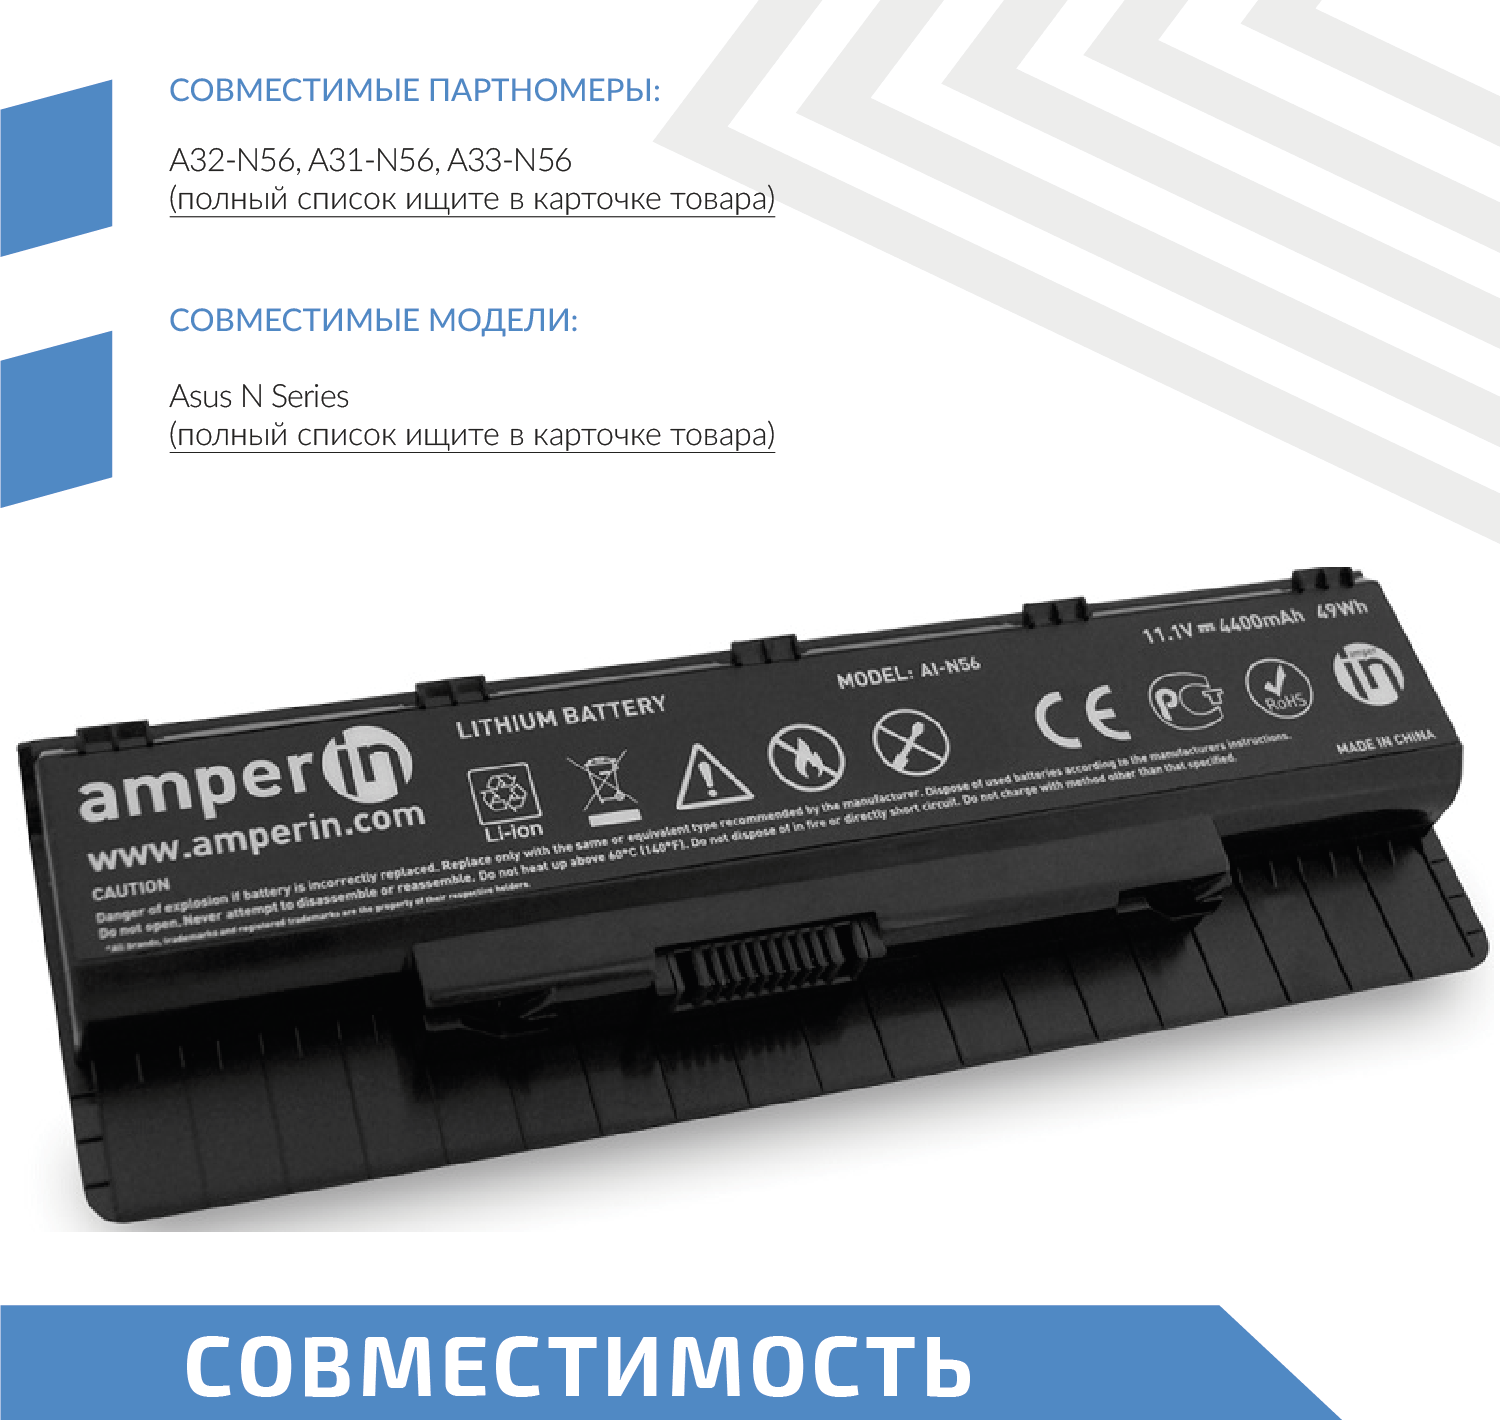 Аккумулятор (АКБ аккумуляторная батарея) Amperin AI-N56 для ноутбука Asus N Series 111В 4400мАч 49Вт